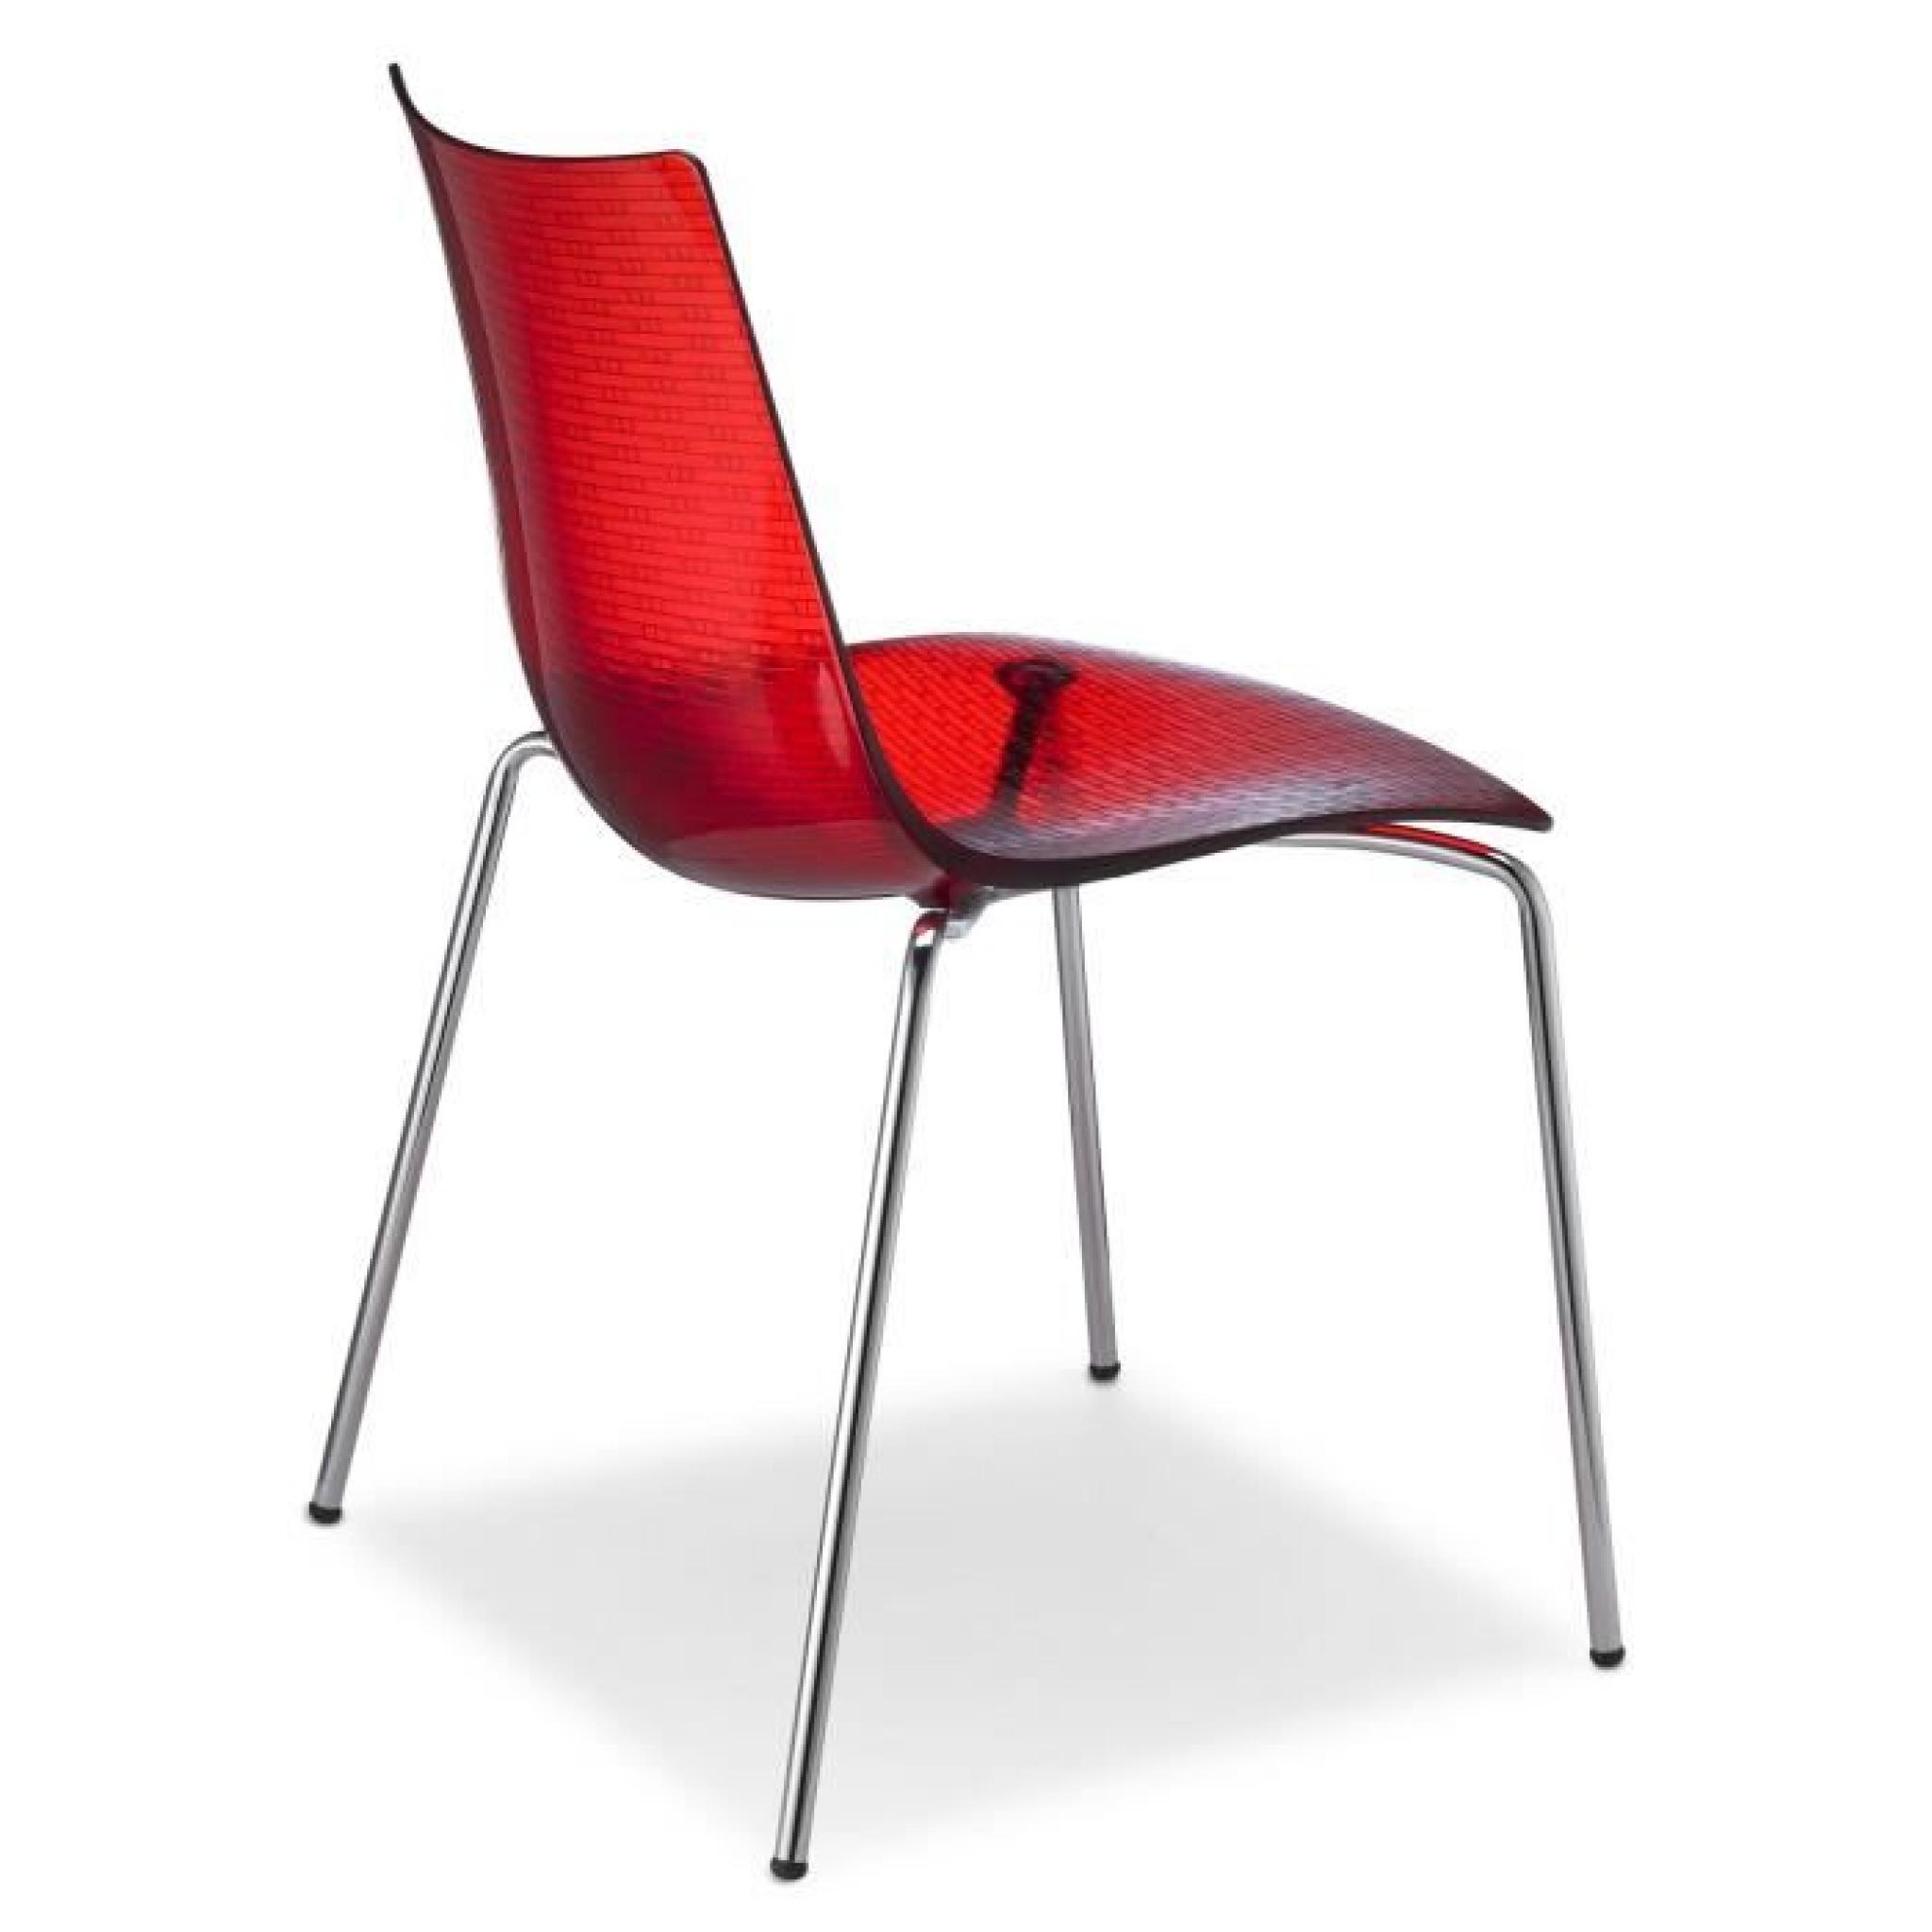 Chaise rouge transparente design - DEA SCRATCHPROOF 4 legs rouge transparente - deco